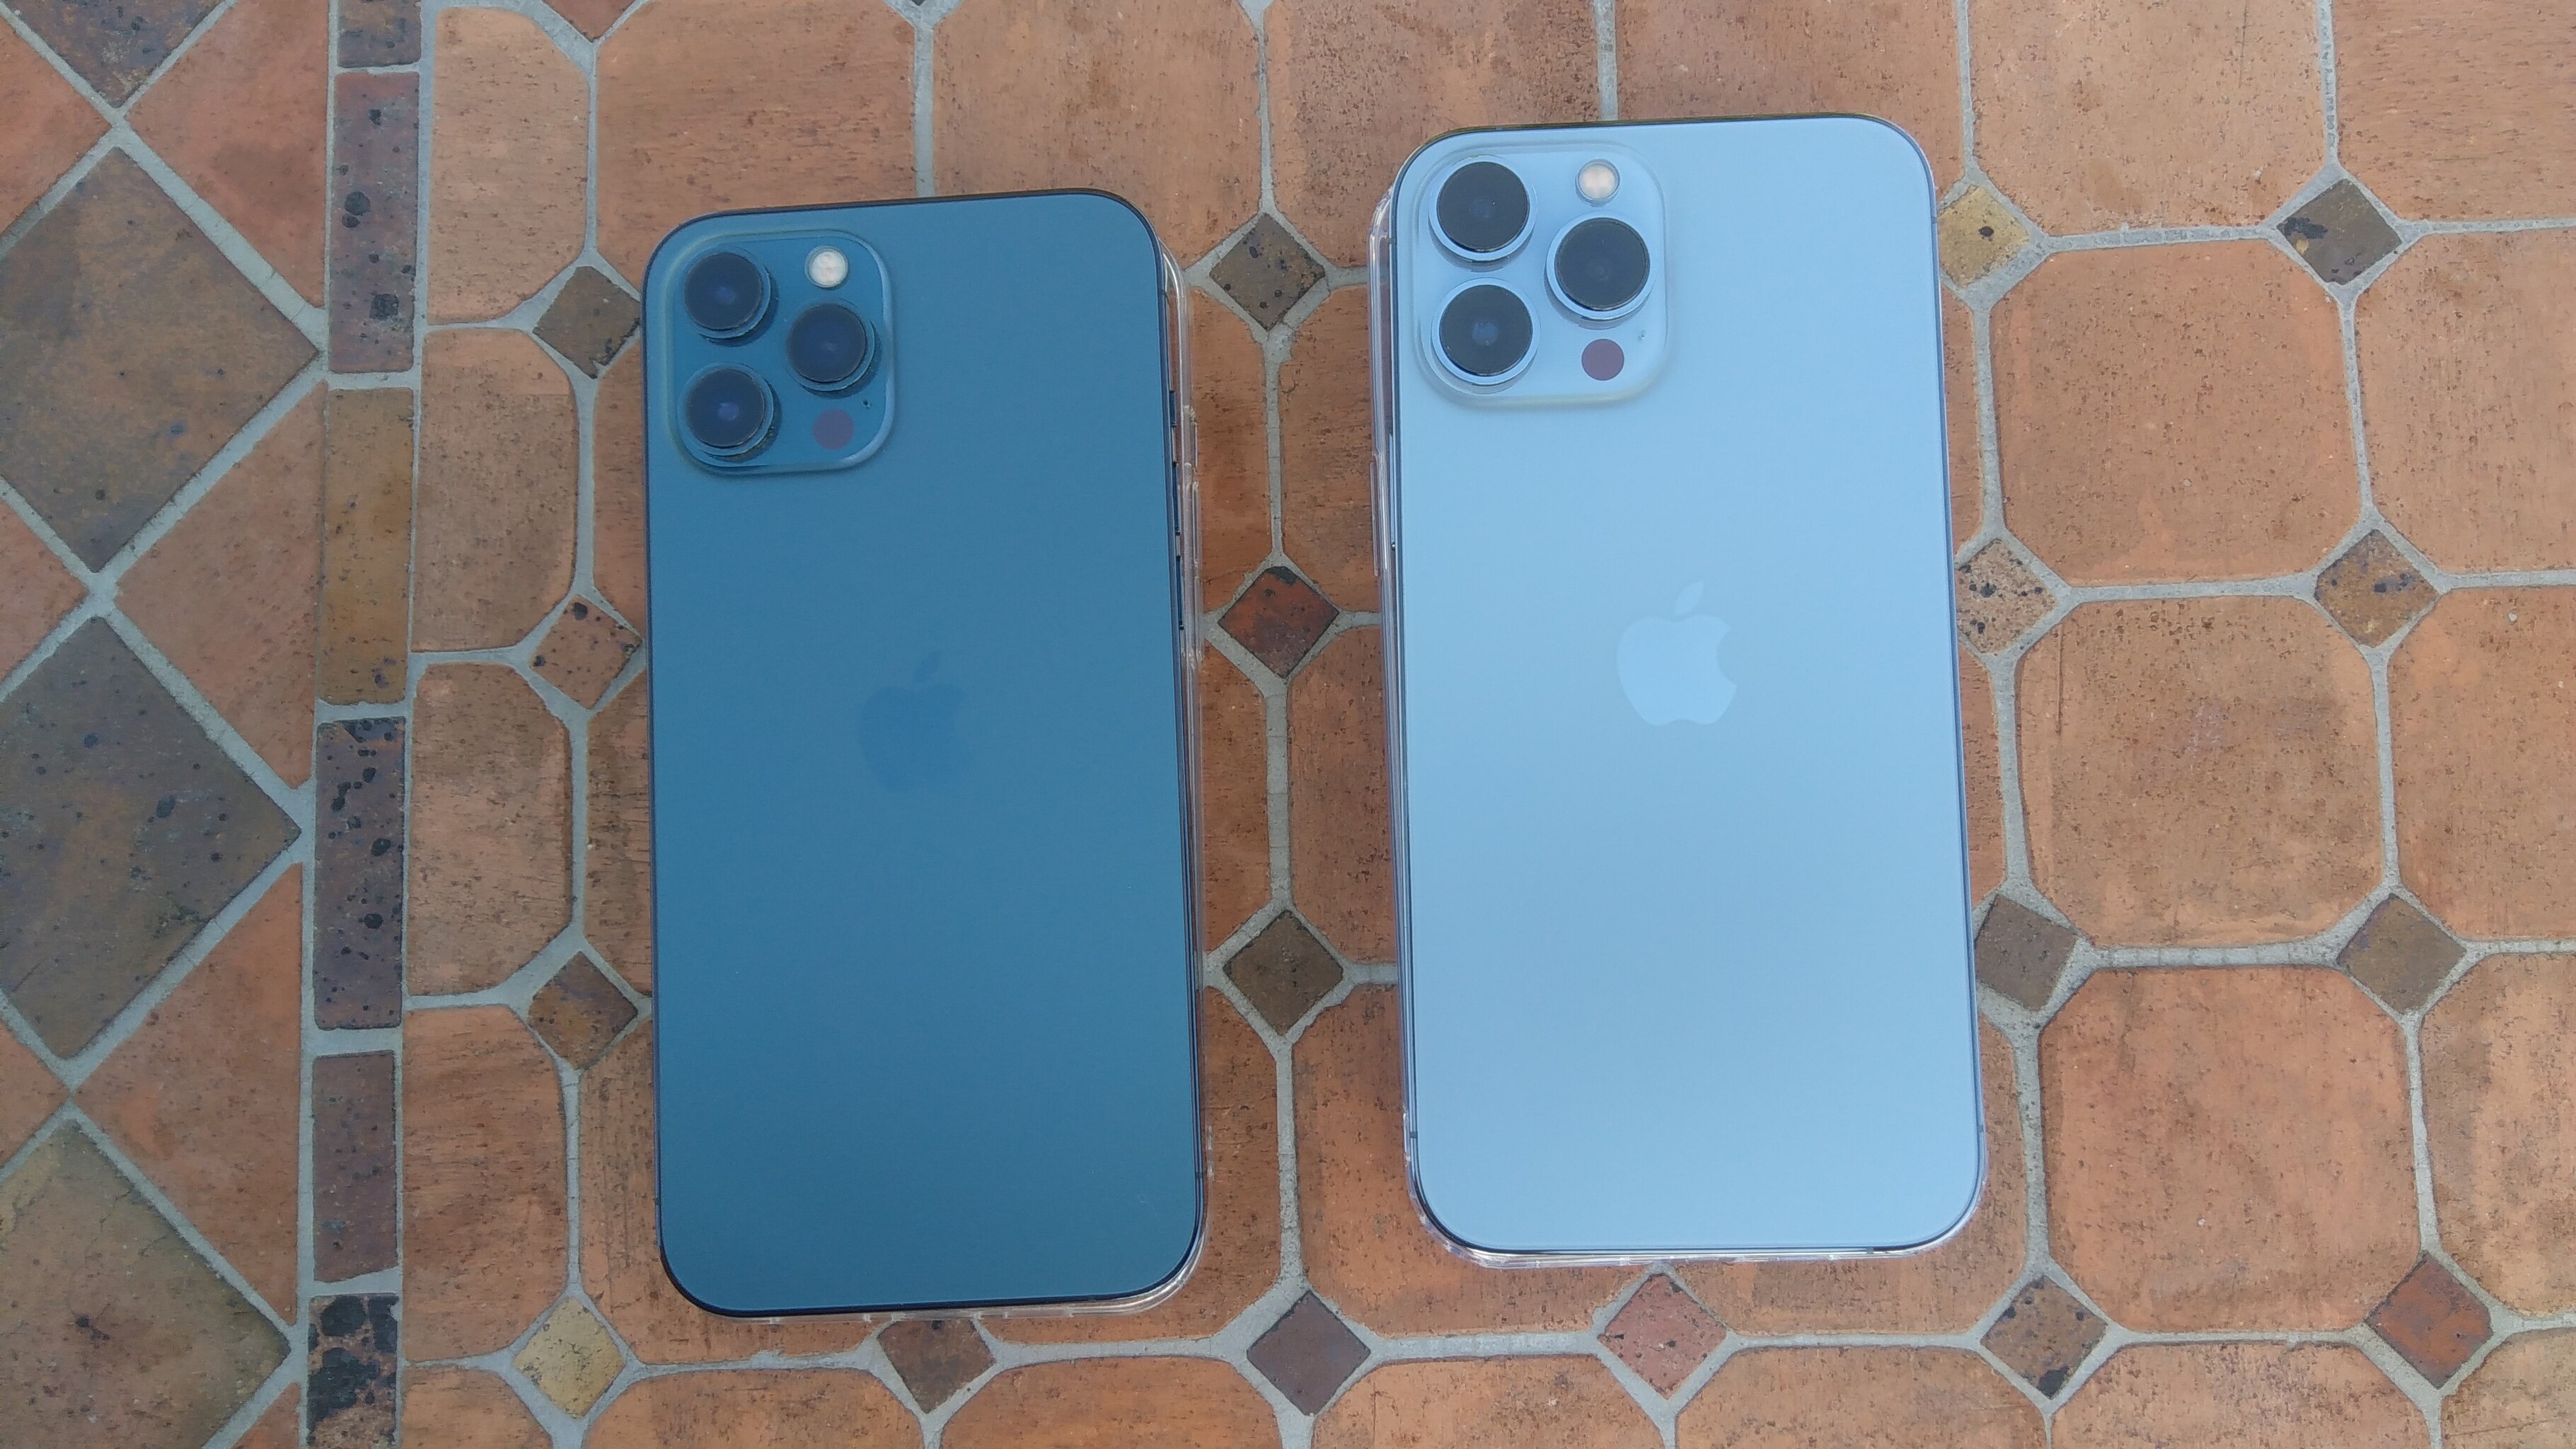 Ngắm trọn bộ iPhone 12 Pro đầy đủ 4 màu sắc vừa về Việt Nam